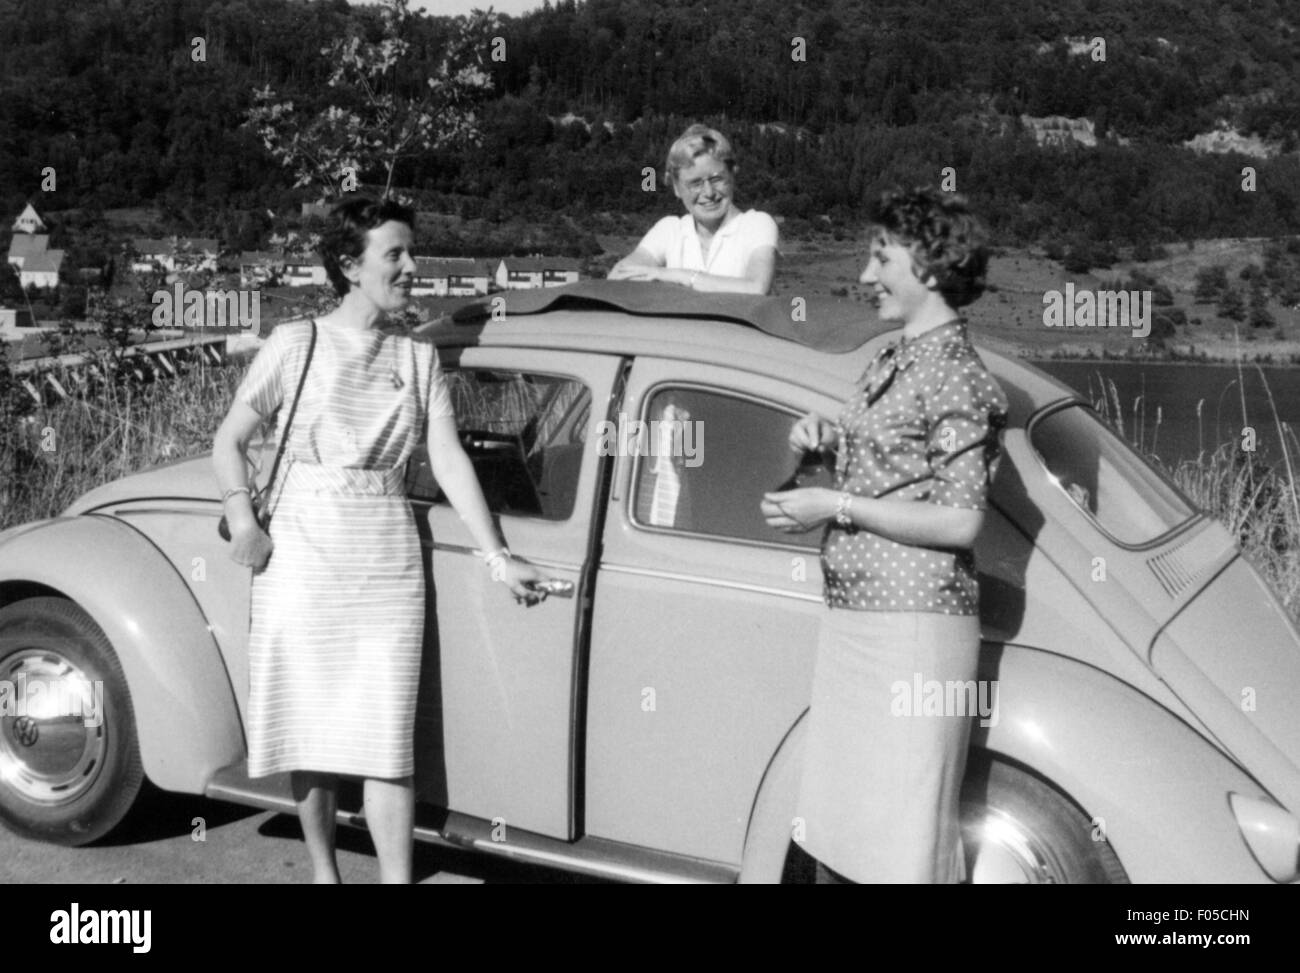 Temps de loisirs, excursion, trois femmes devant VW Beetle ayant une pause sur un voyage, années 1950, droits additionnels-Clearences-non disponible Banque D'Images